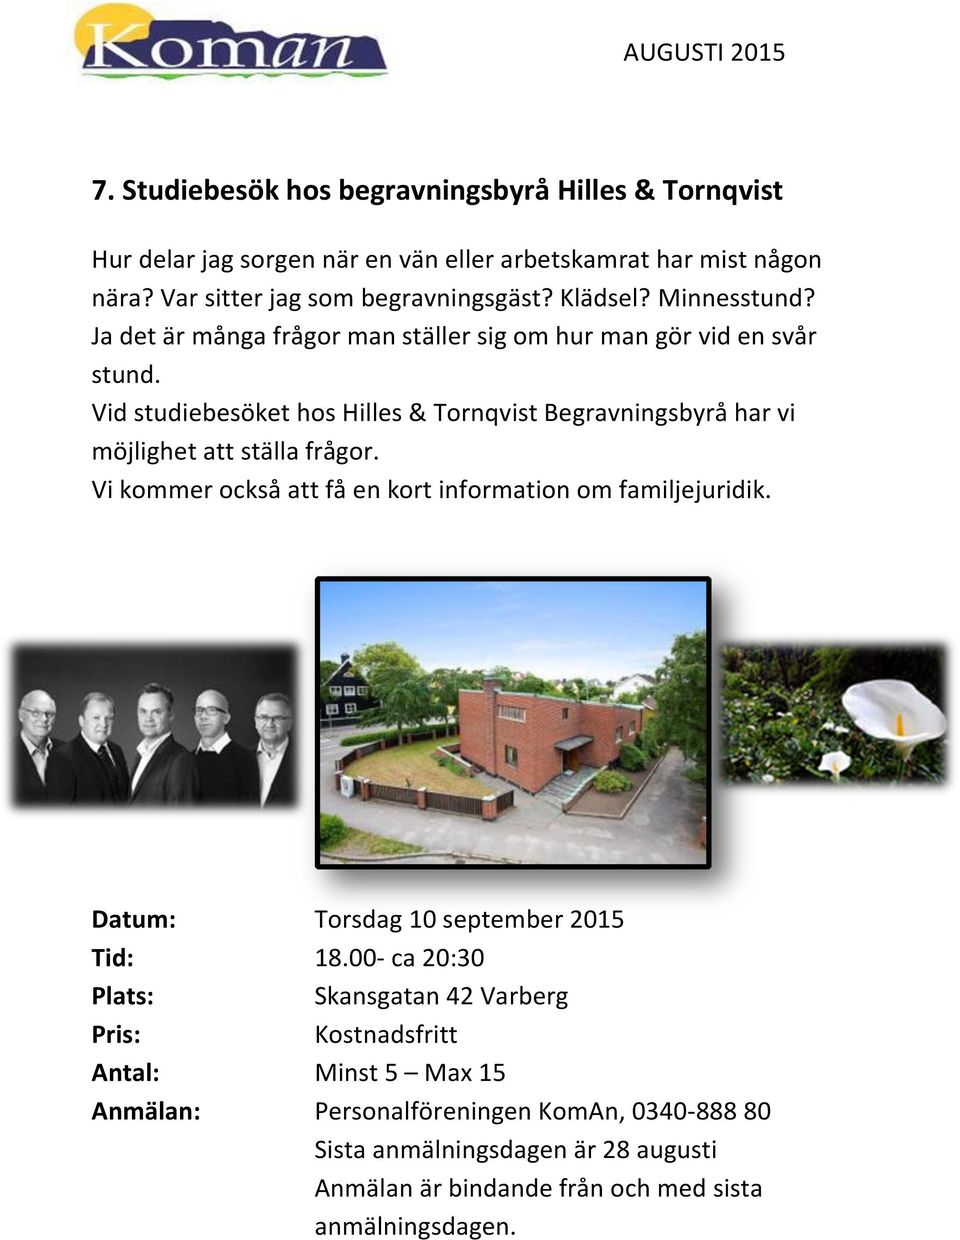 Vid studiebesöket hos Hilles & Tornqvist Begravningsbyrå har vi möjlighet att ställa frågor.